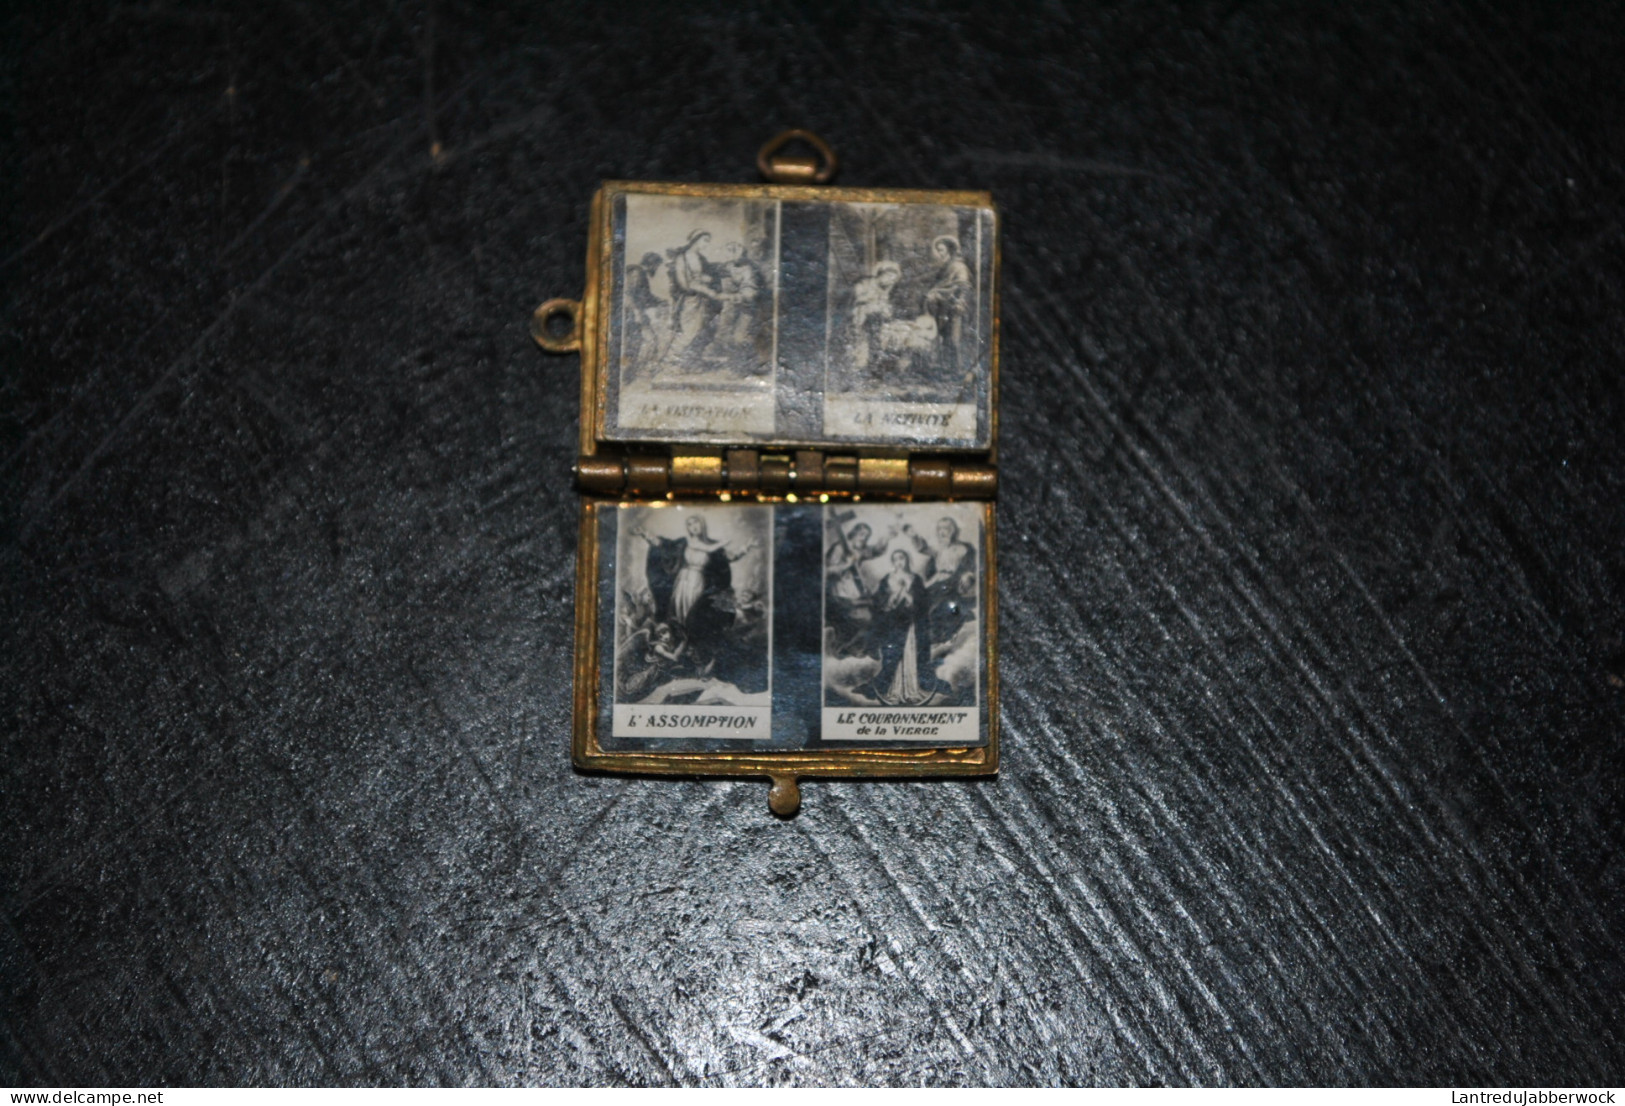 Pendentif émaillé métal doré Livre photos religieuses Complet Bijou ANTIQUE MINIATURE PHOTO BOOK PENDANT coeur de JESUS